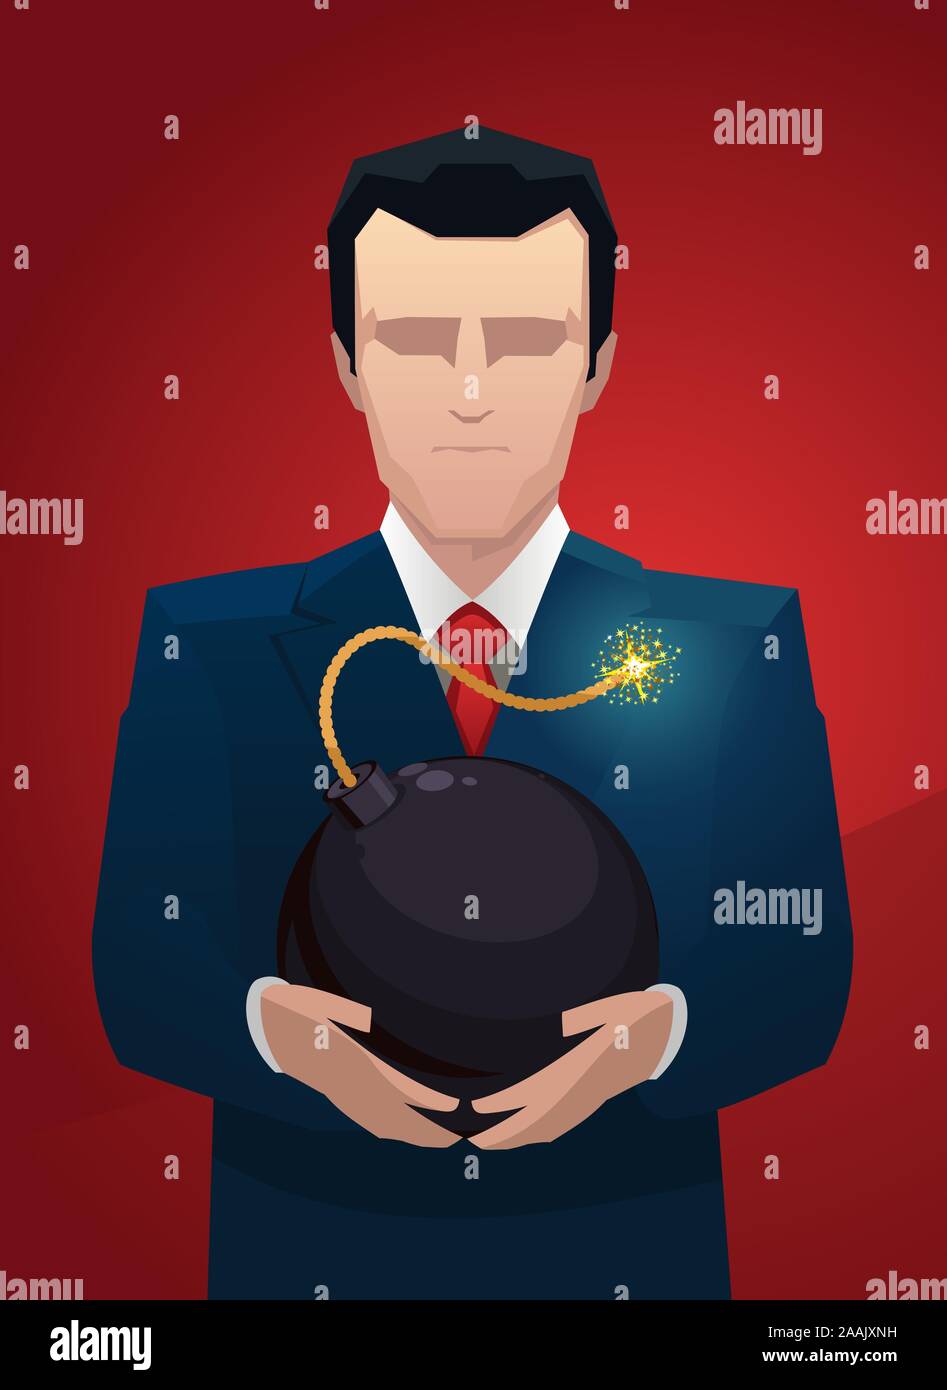 Businessman avec une bombe entre les mains d'illustration vectorielle. Illustration de Vecteur